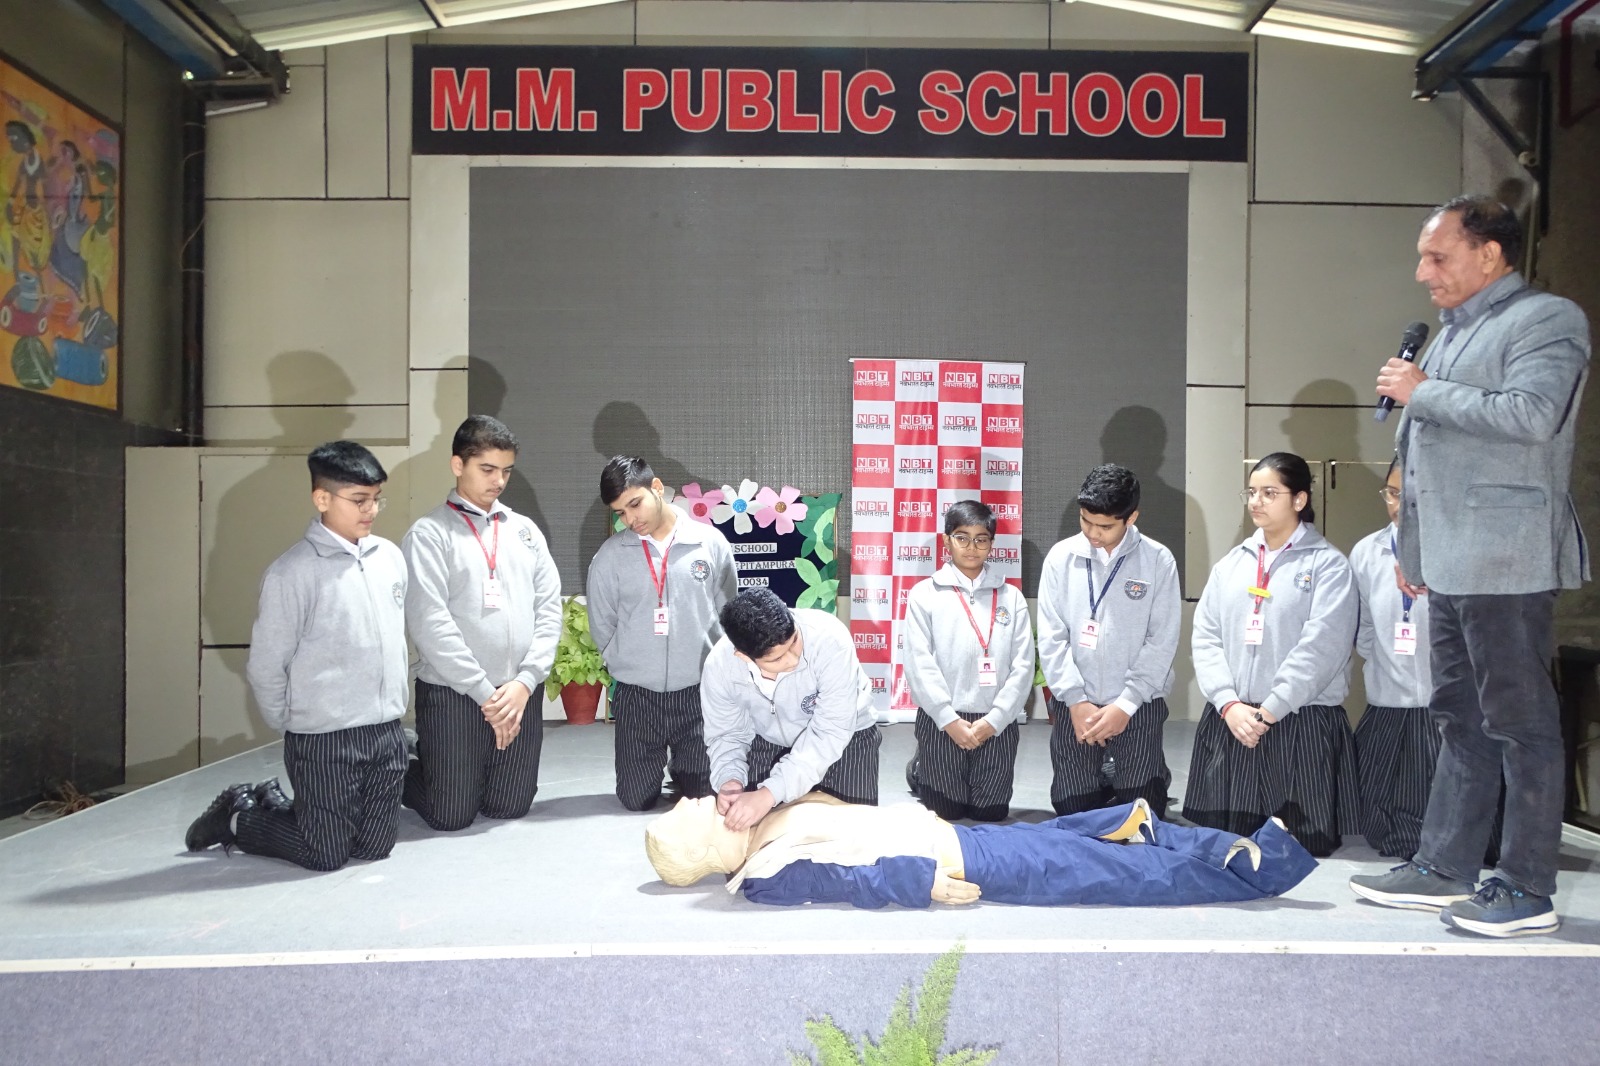 M.M. Public School